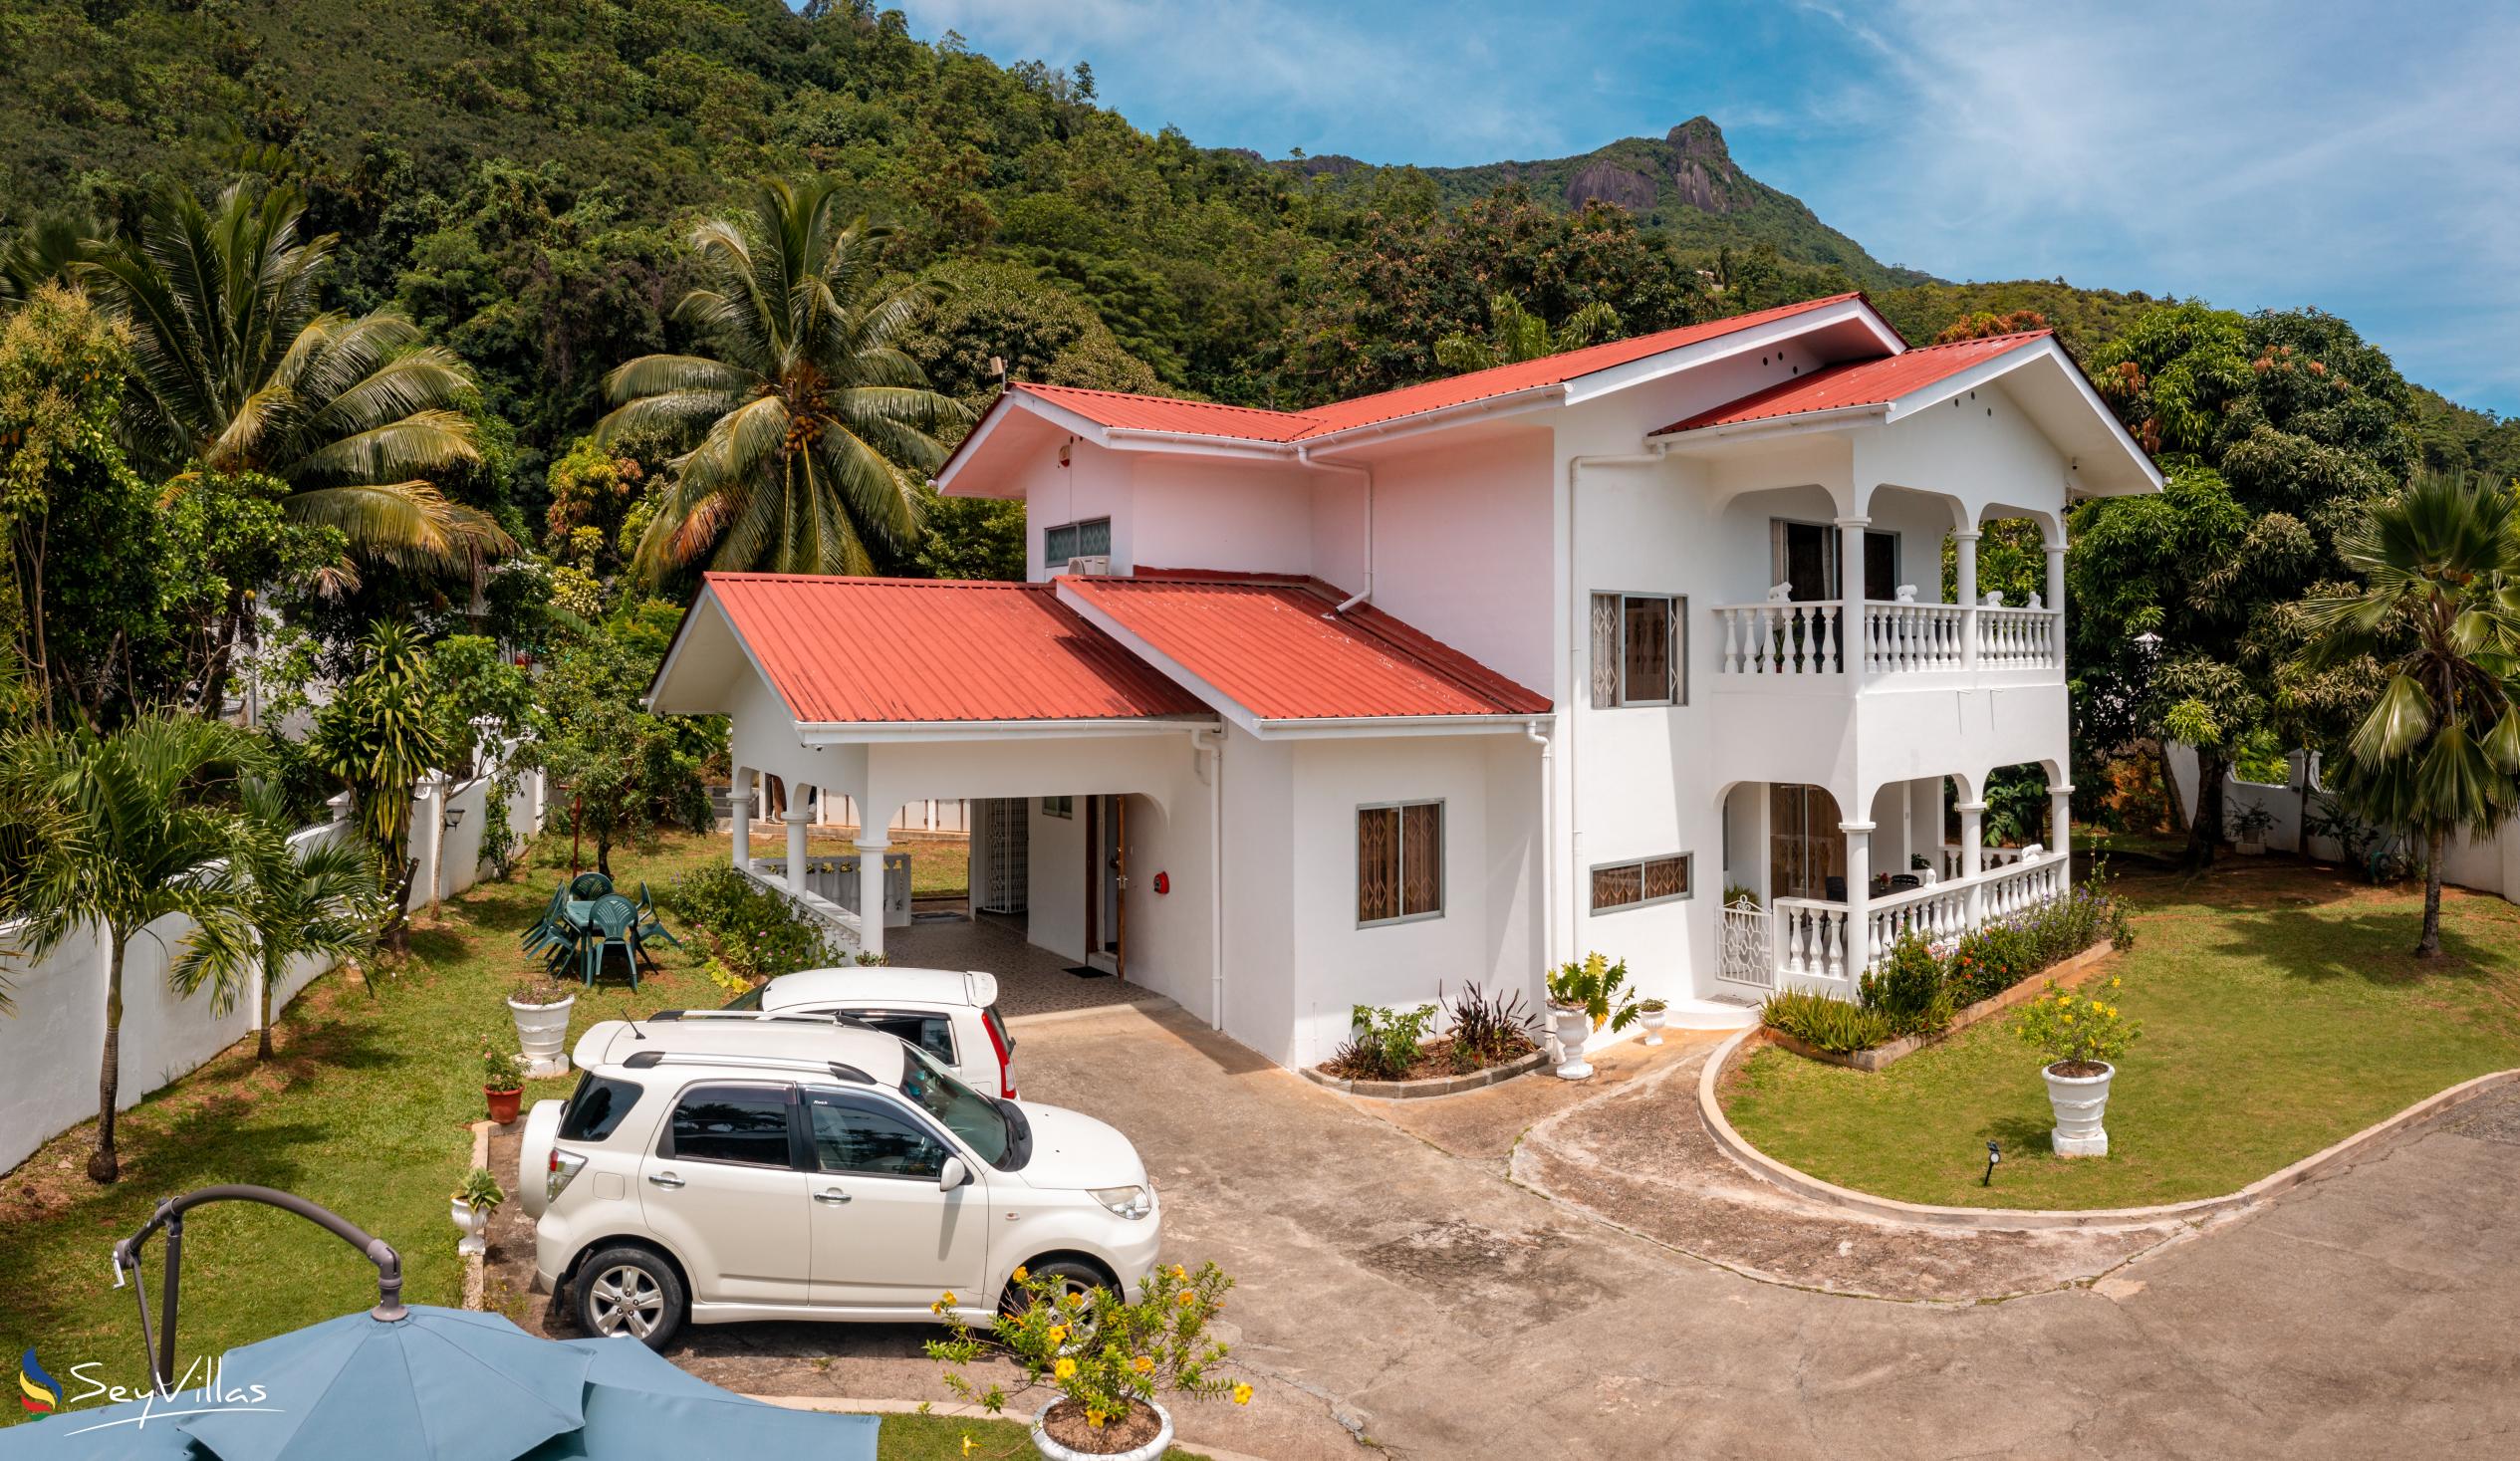 Foto 7: Villa Verde - Aussenbereich - Mahé (Seychellen)